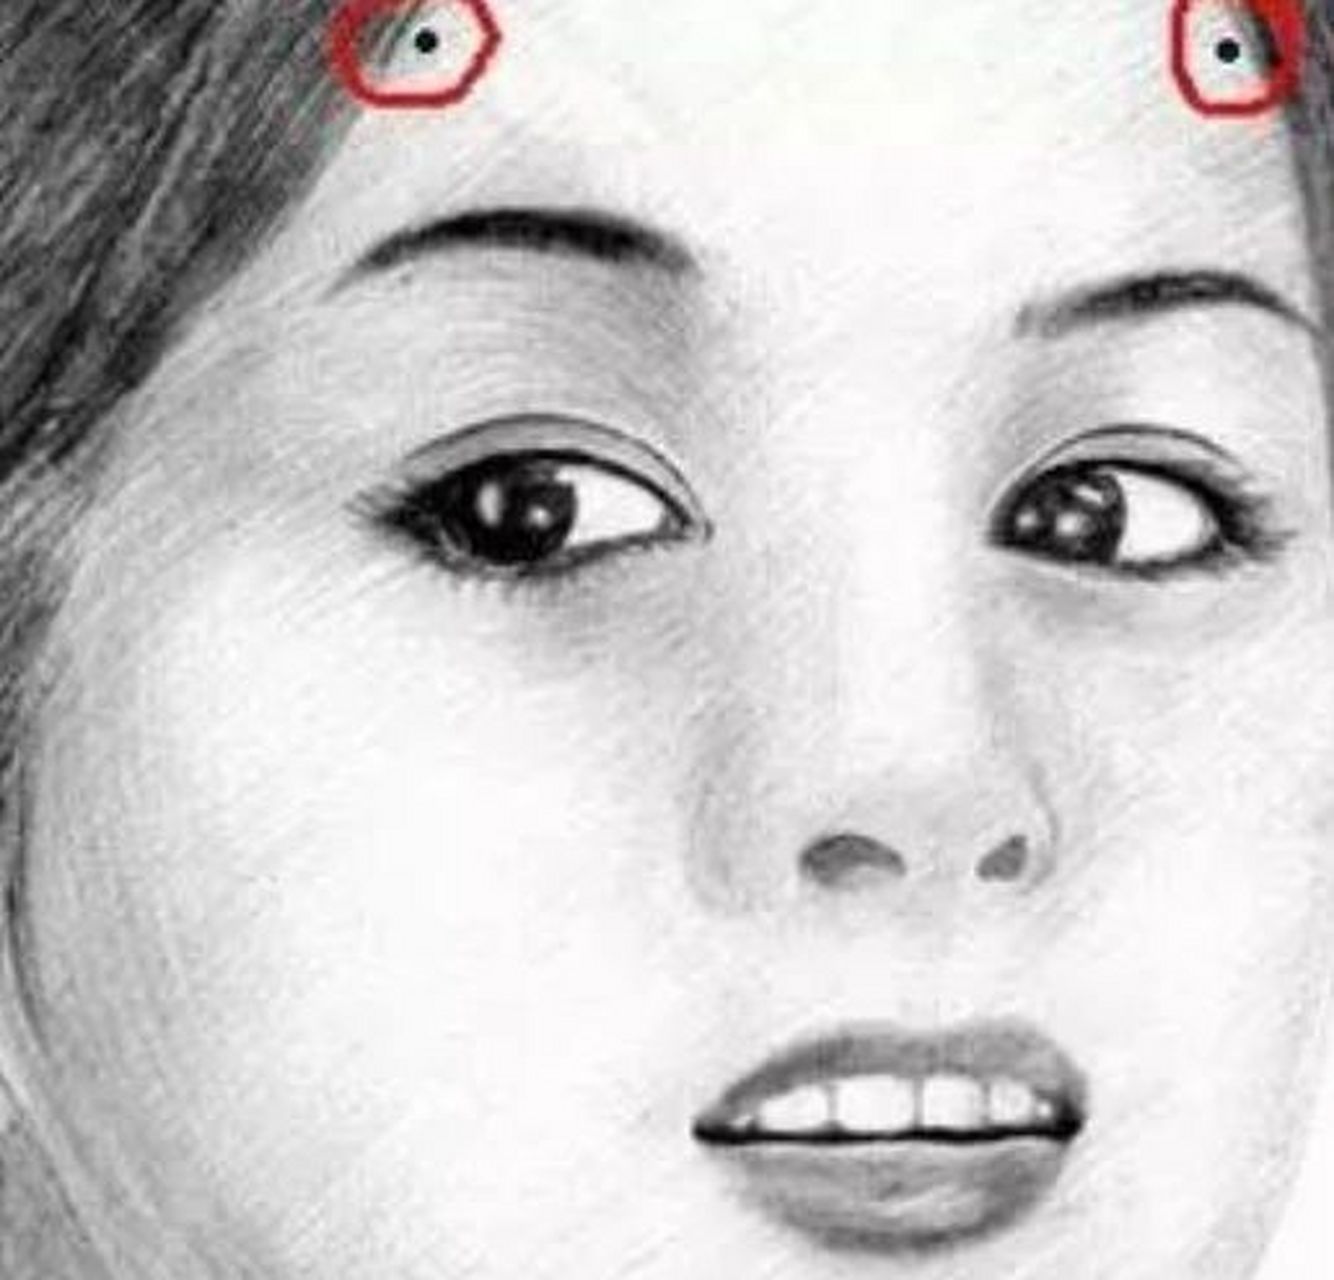 发际线的位置长有痣的话 女人额头的右边接近发际线的位置长有痣的话